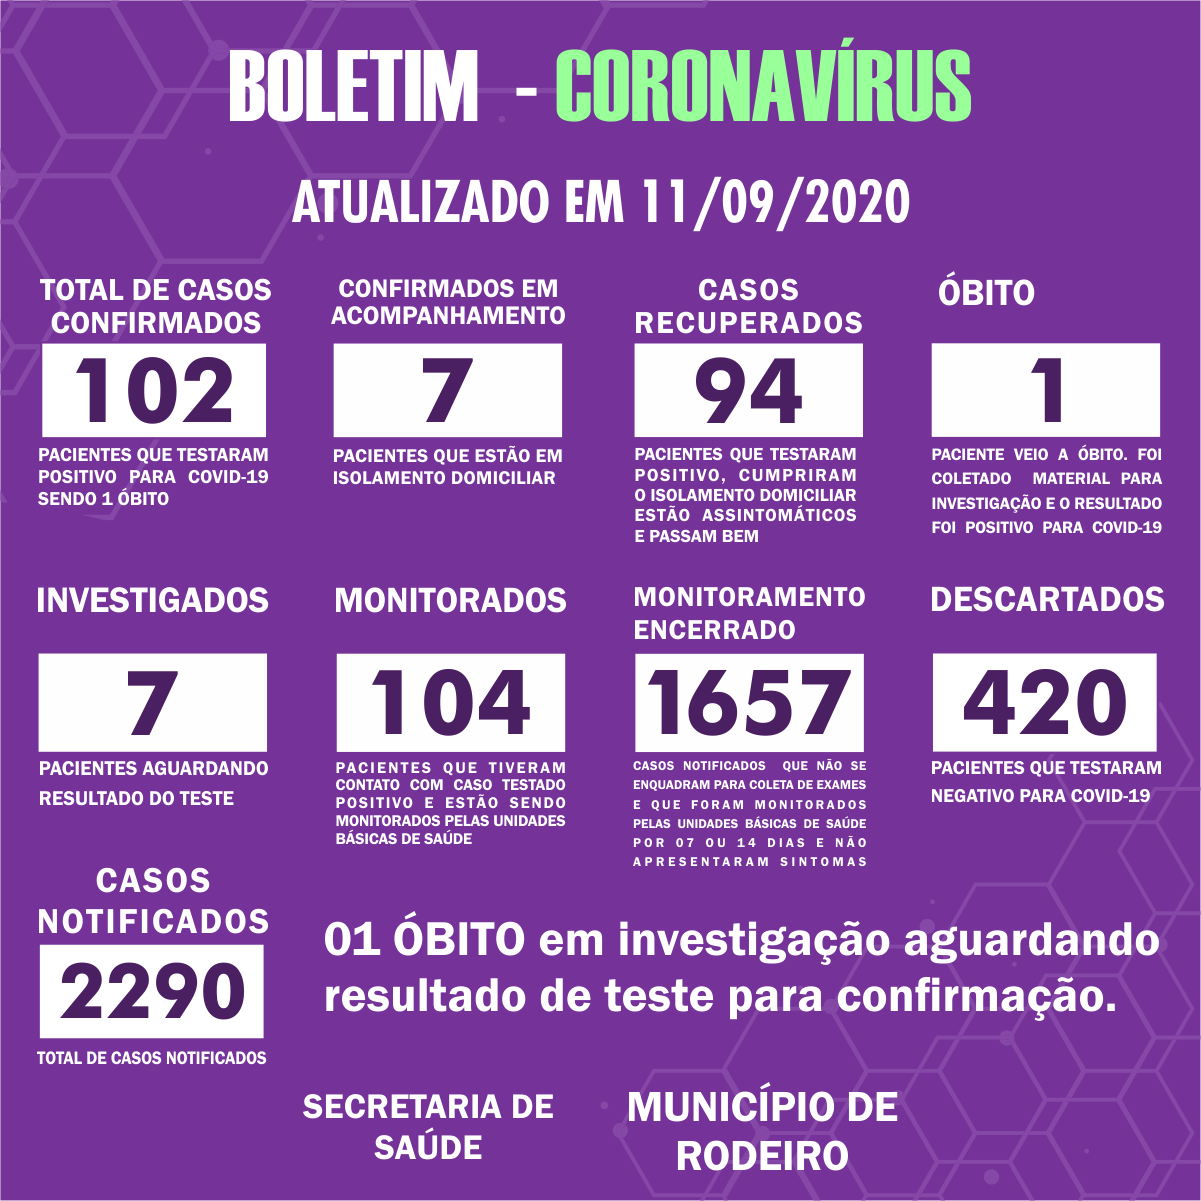 Boletim Epidemiológico do Município de Rodeiro sobre coronavírus, atualizado em 11/09/2020